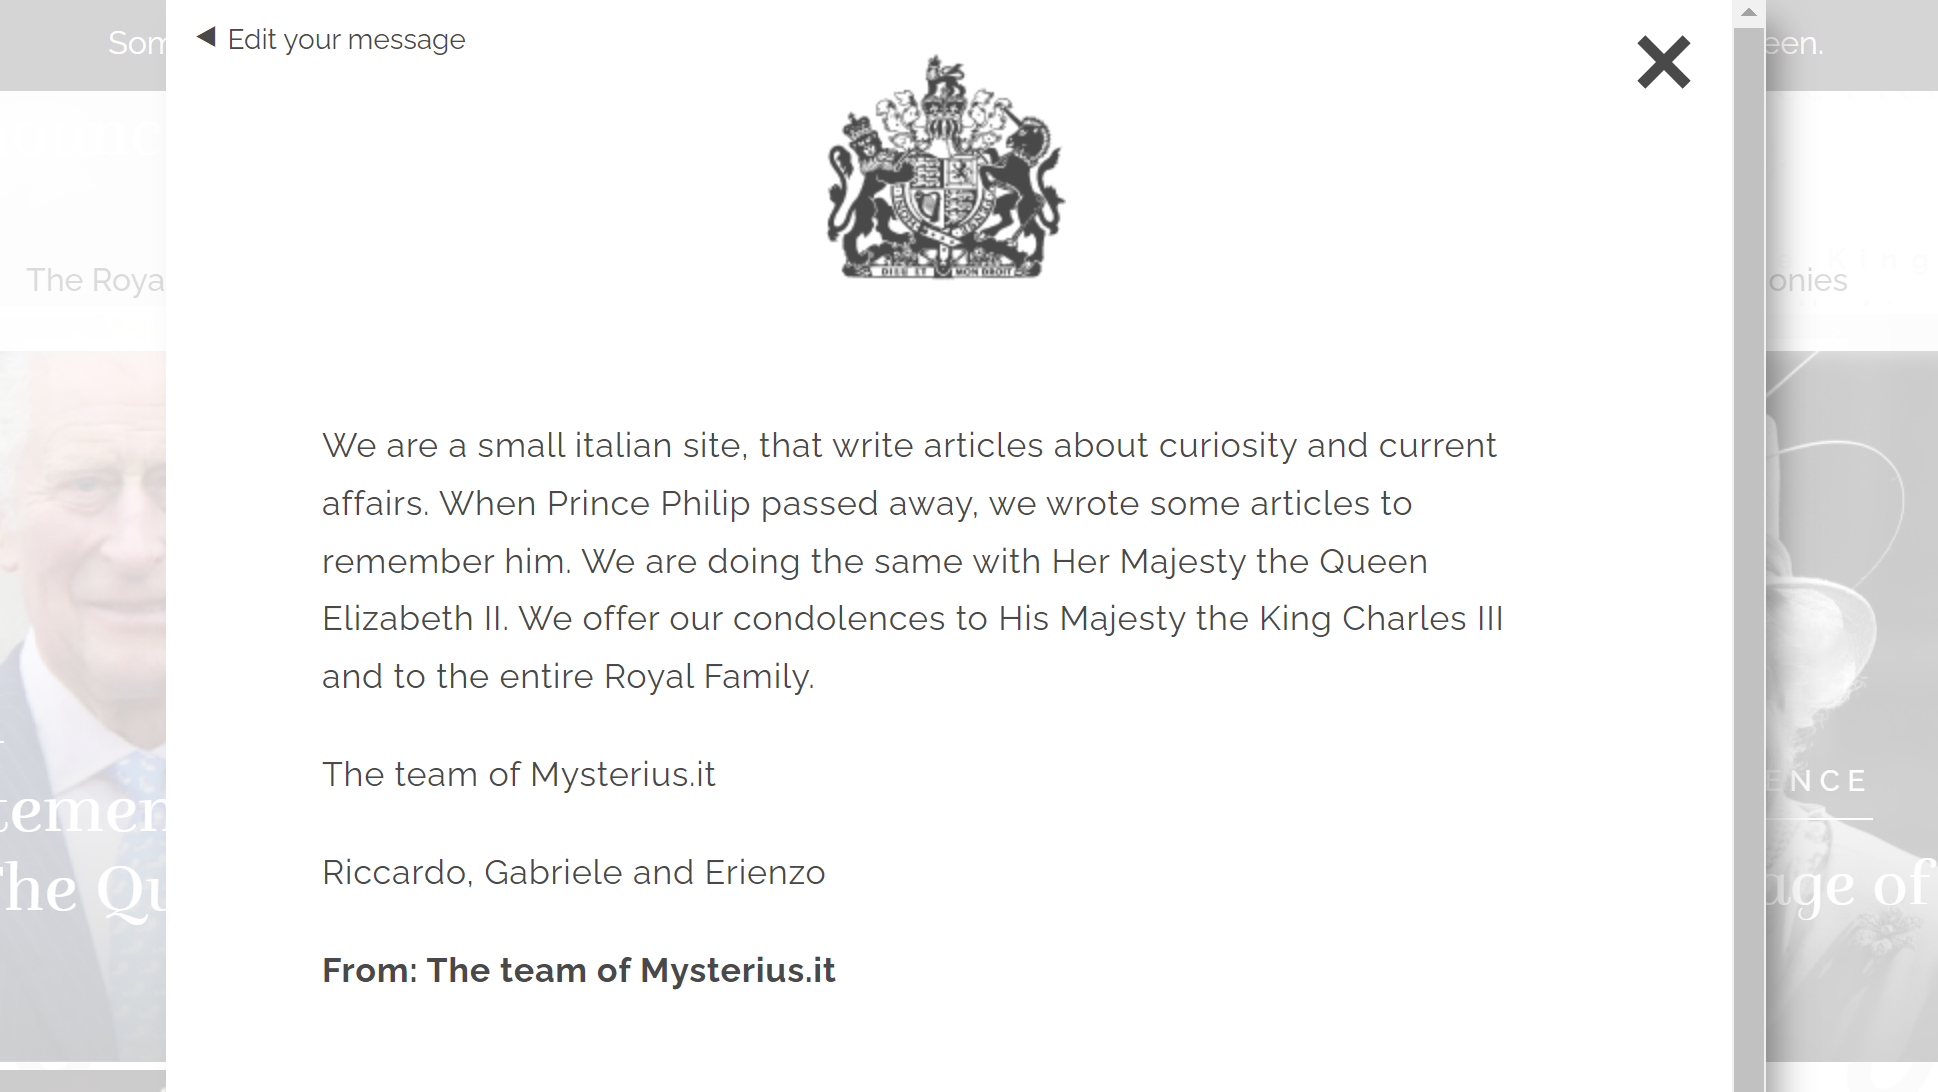 Messaggio di cordoglio di Mysterius.it alla Famiglia Reale per la scomparsa della Regina Elisabetta II